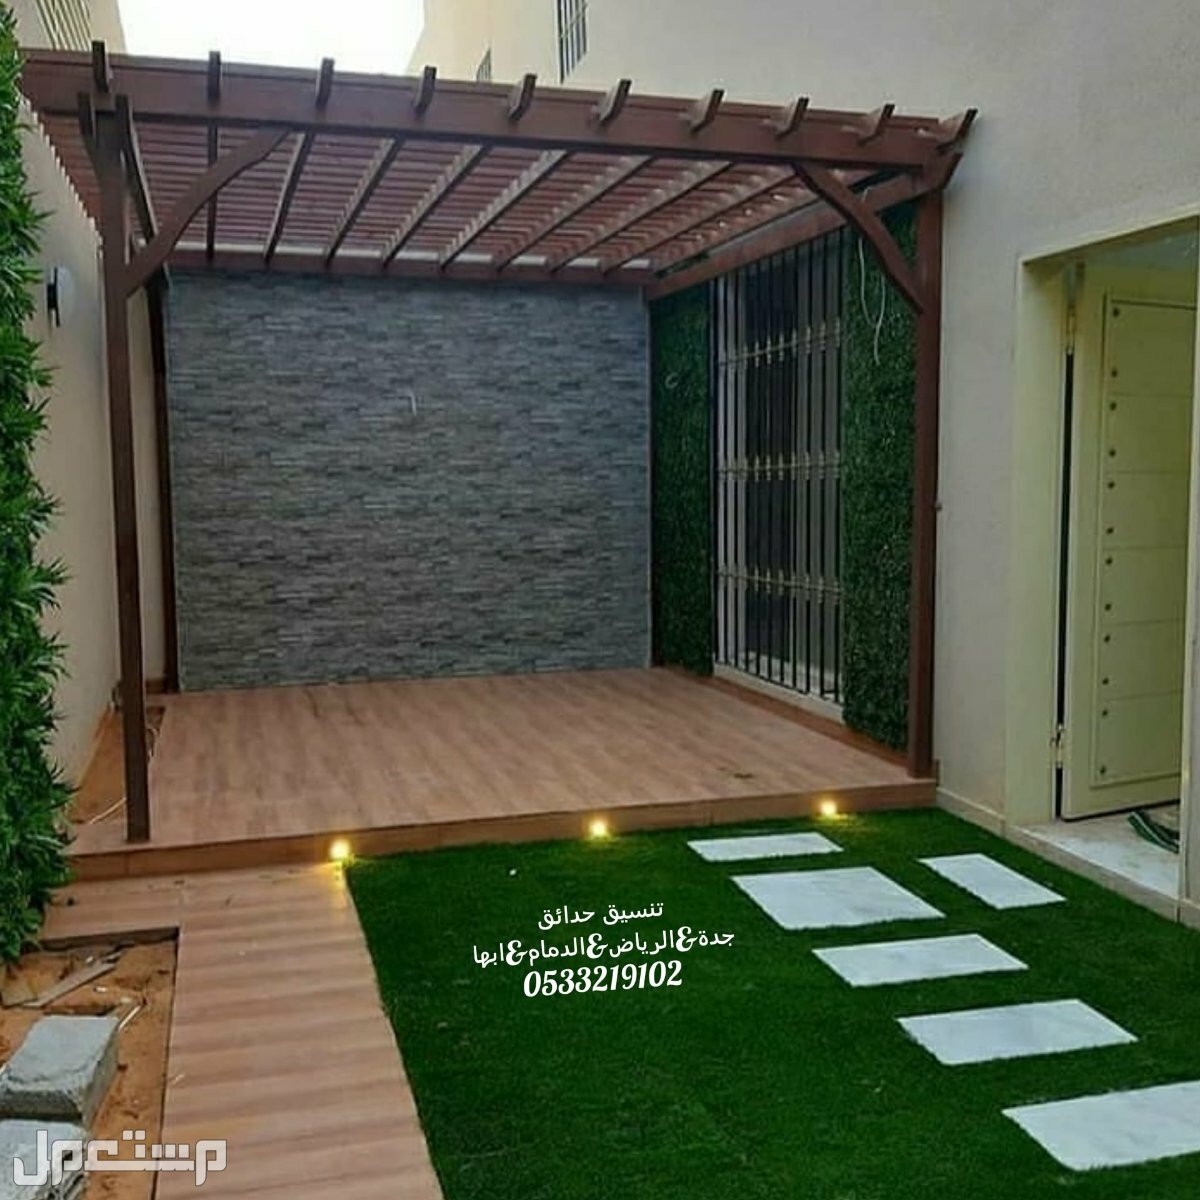 تركيب عشب جدارى مظلات تصميم شلالات تنسيق الحدائق المنزلية عشب صناعى حدائق العشب الصناعى 0533219102